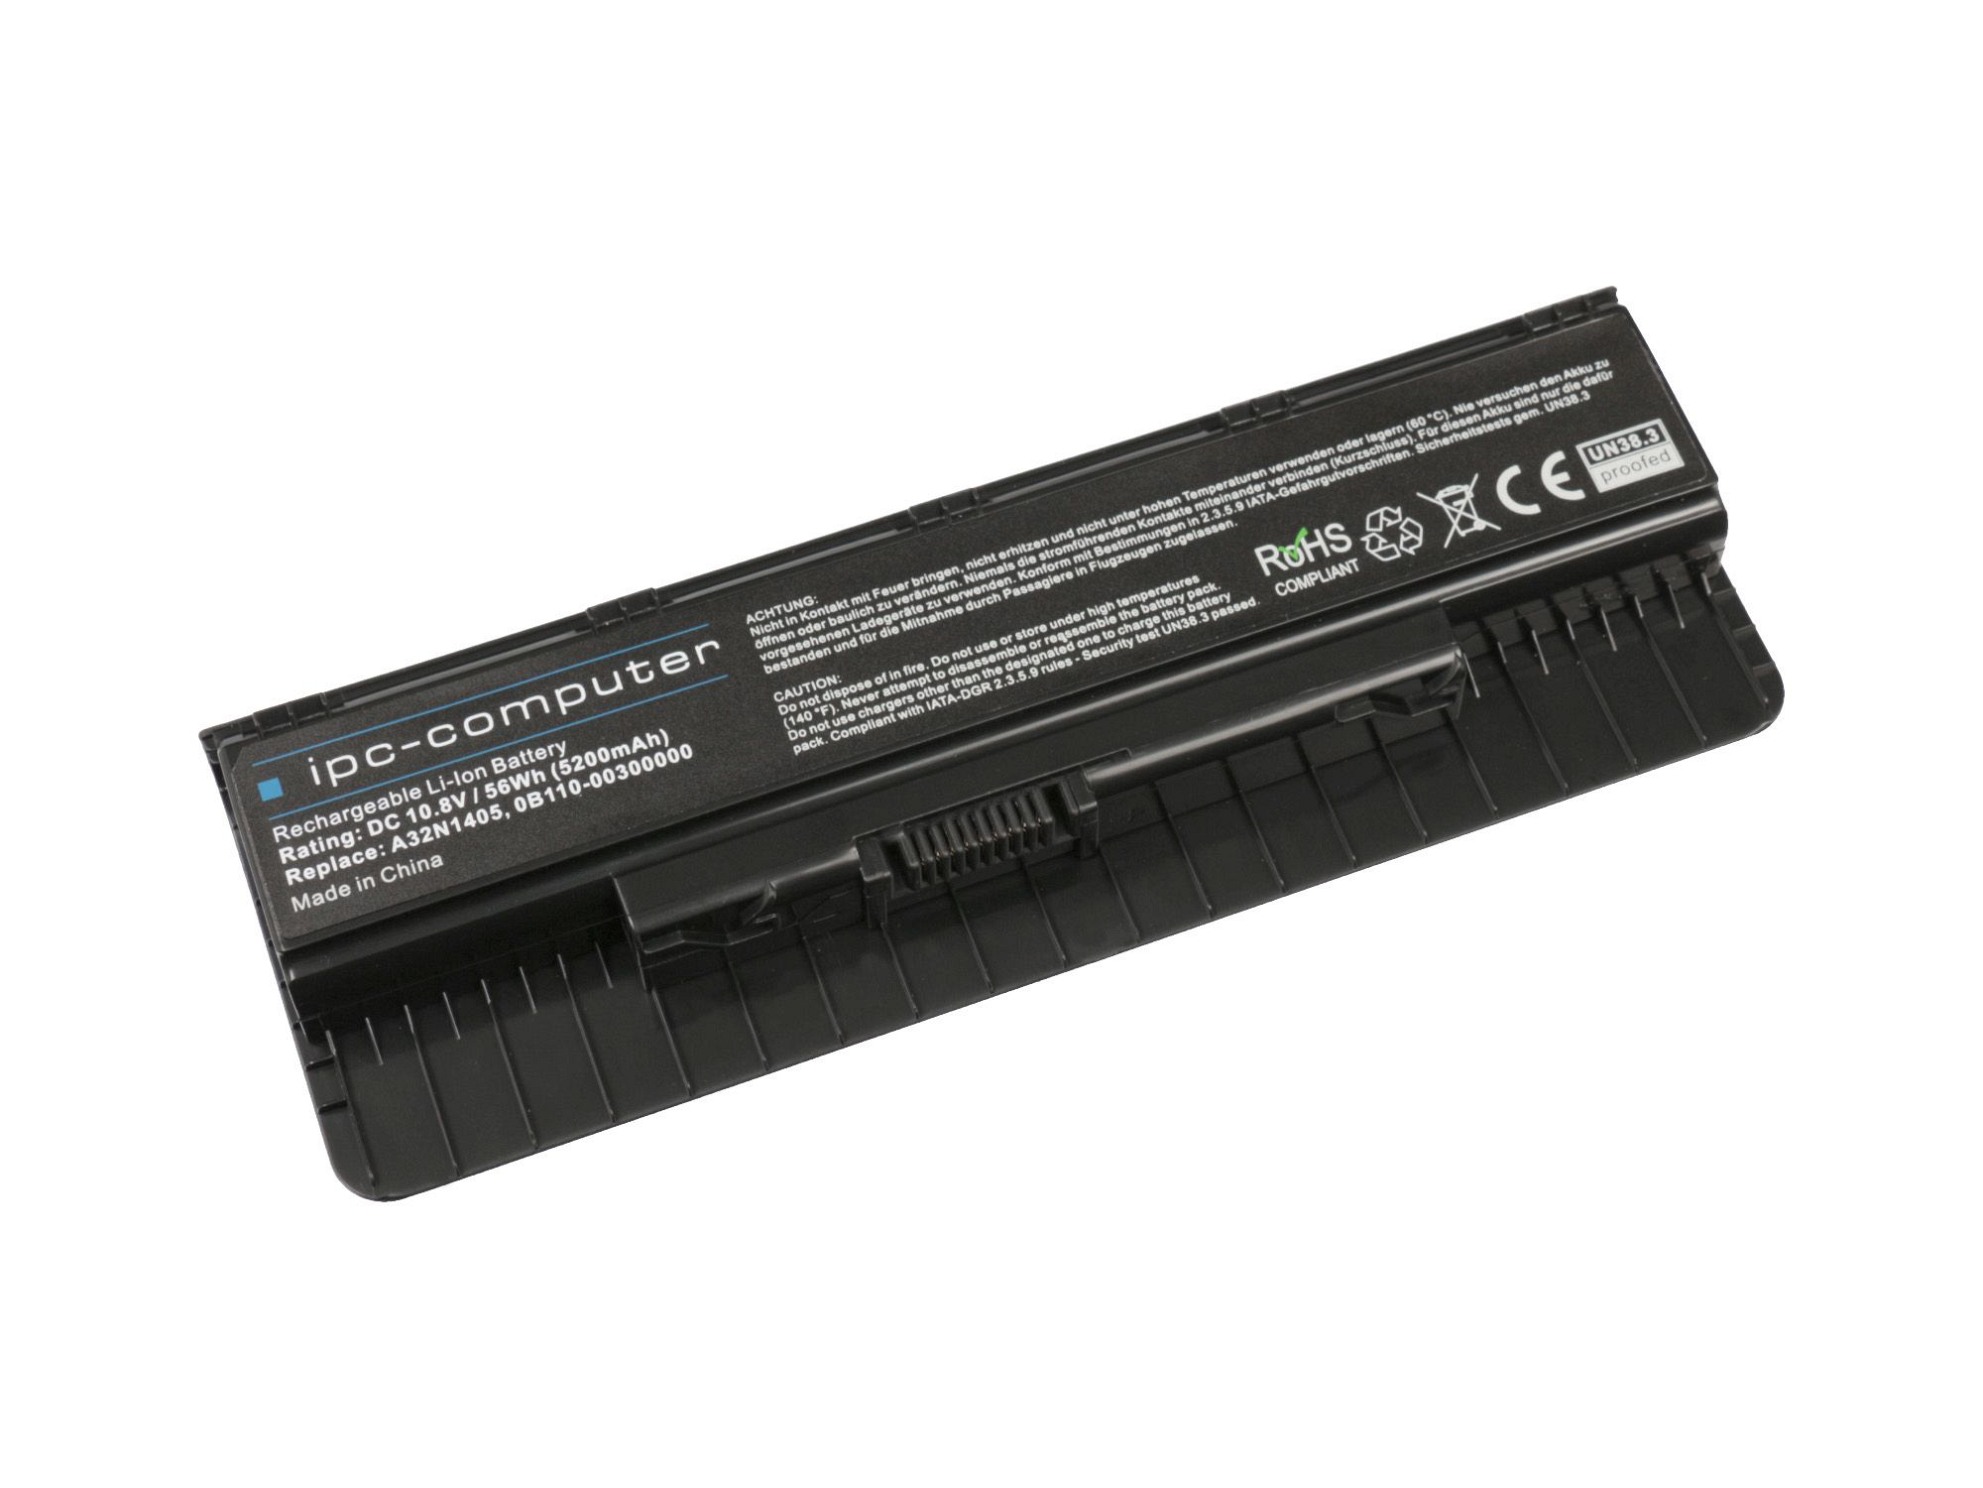 IPC-Computer Batterie 56Wh Nouveau compatible pour Asus ROG GL551JX